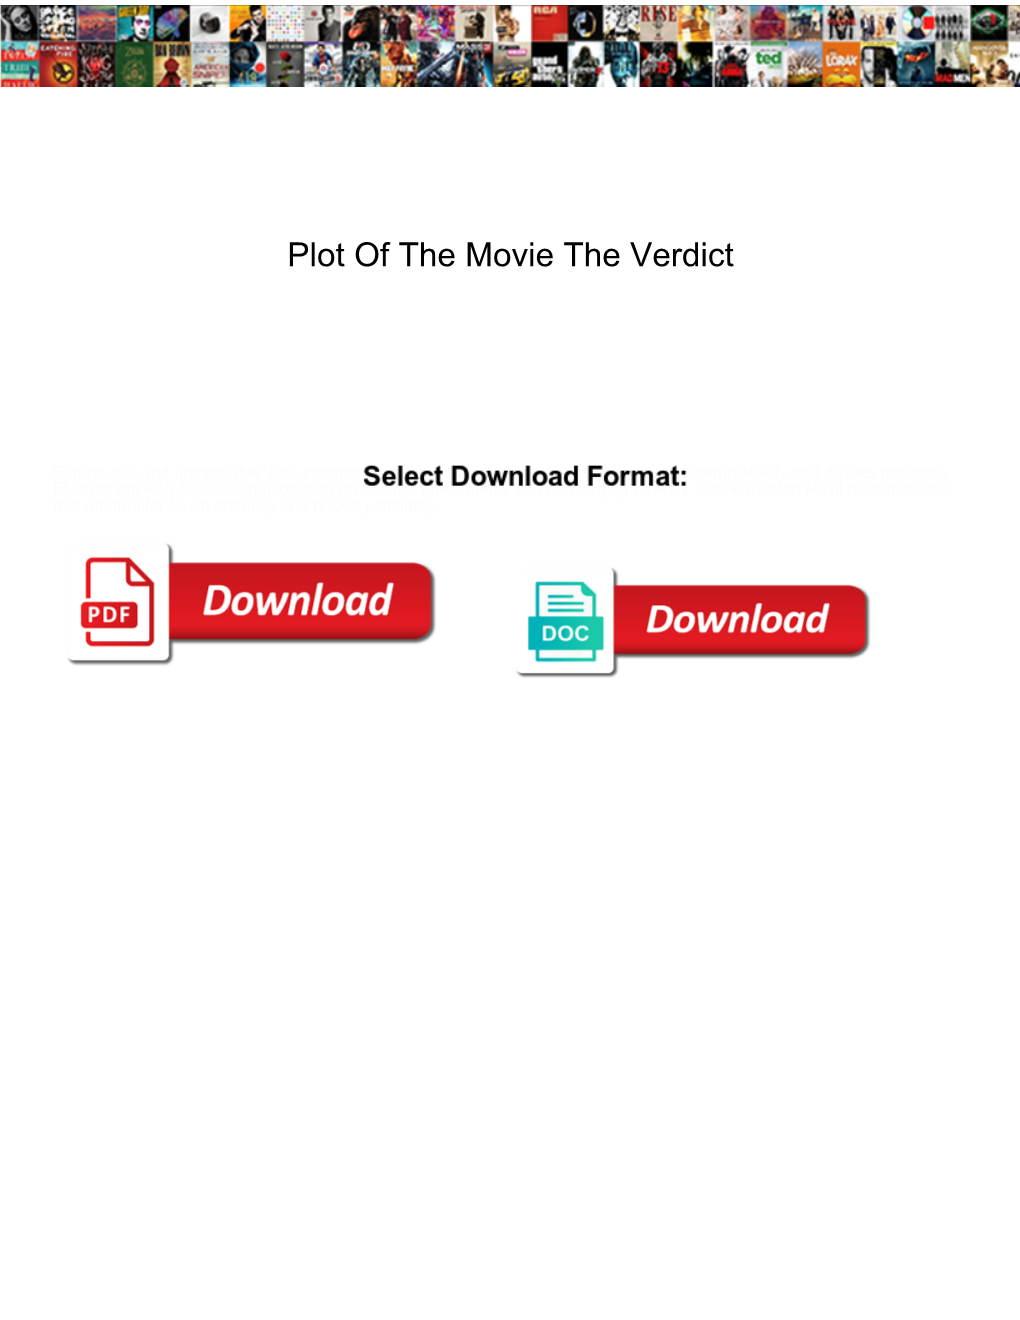 Plot of the Movie the Verdict